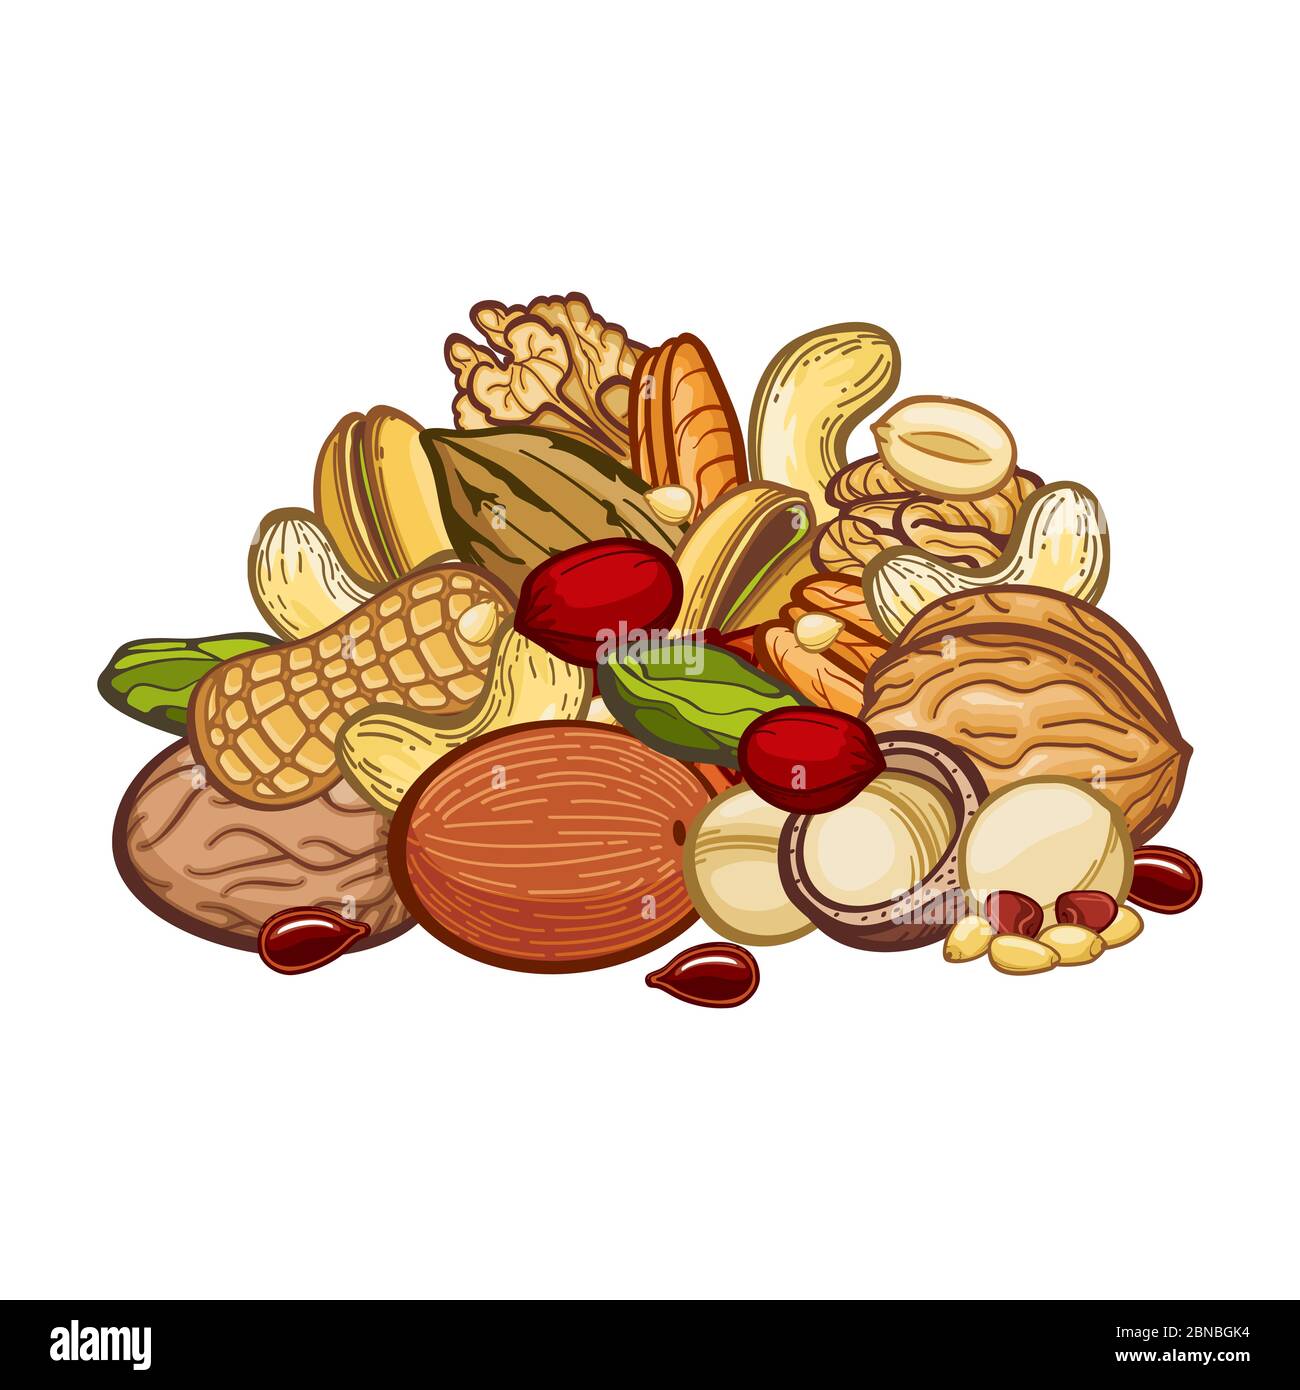 Nüsse assortie isoliert auf weißem Hintergrund. Nüsse Lebensmittel und natürliche Samen, gesunde Zutat für Vegetarier, Vektor-Illustration Stock Vektor